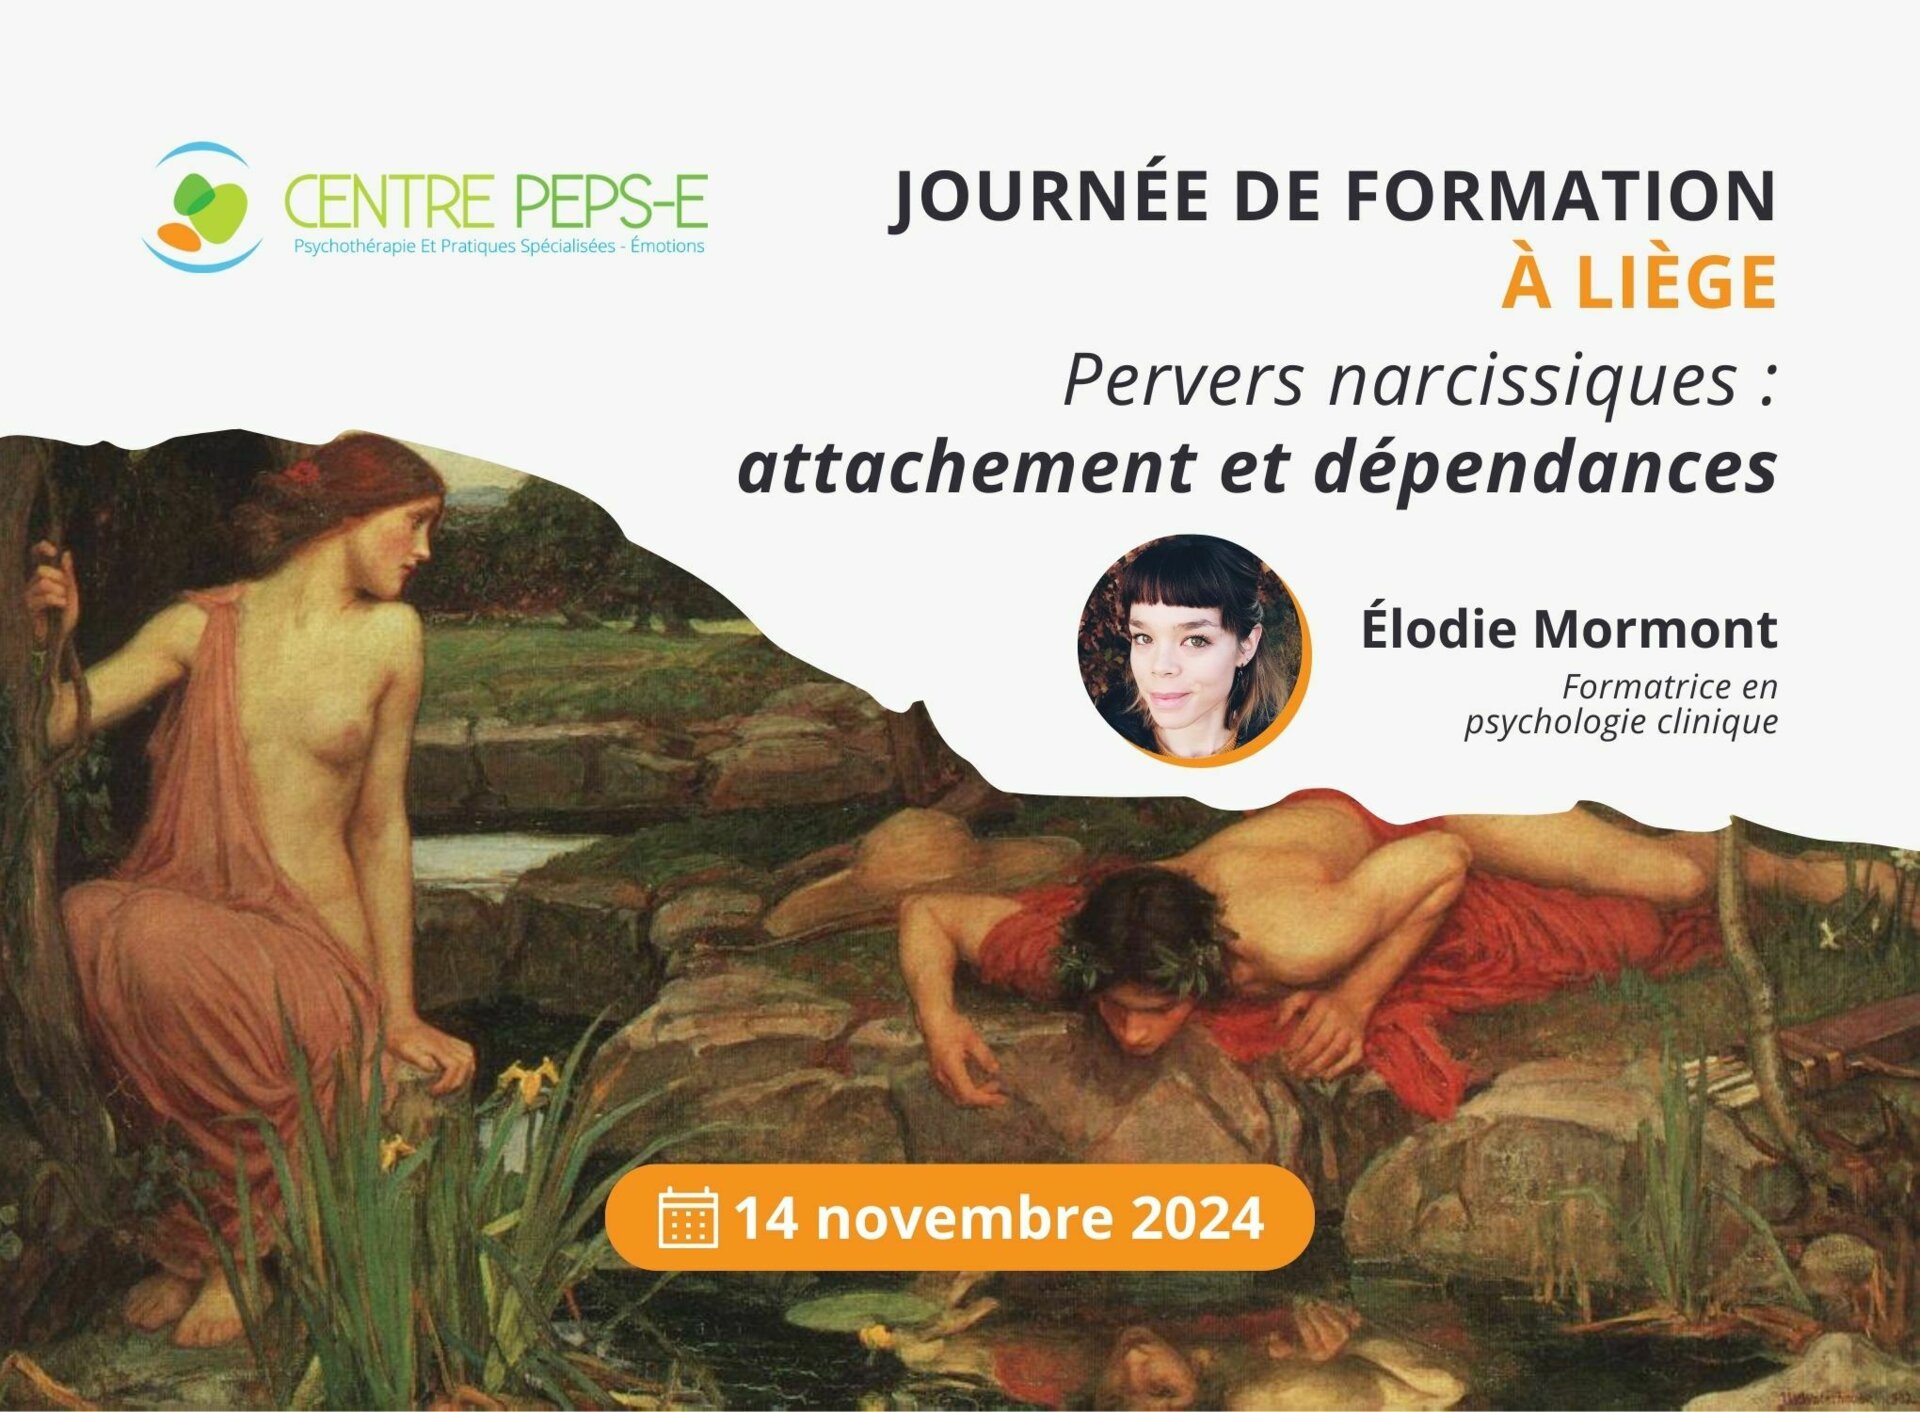 Journée de formation à Liège - Pervers narcissiques : attachement et dépendances - Le 14 novembre 2024